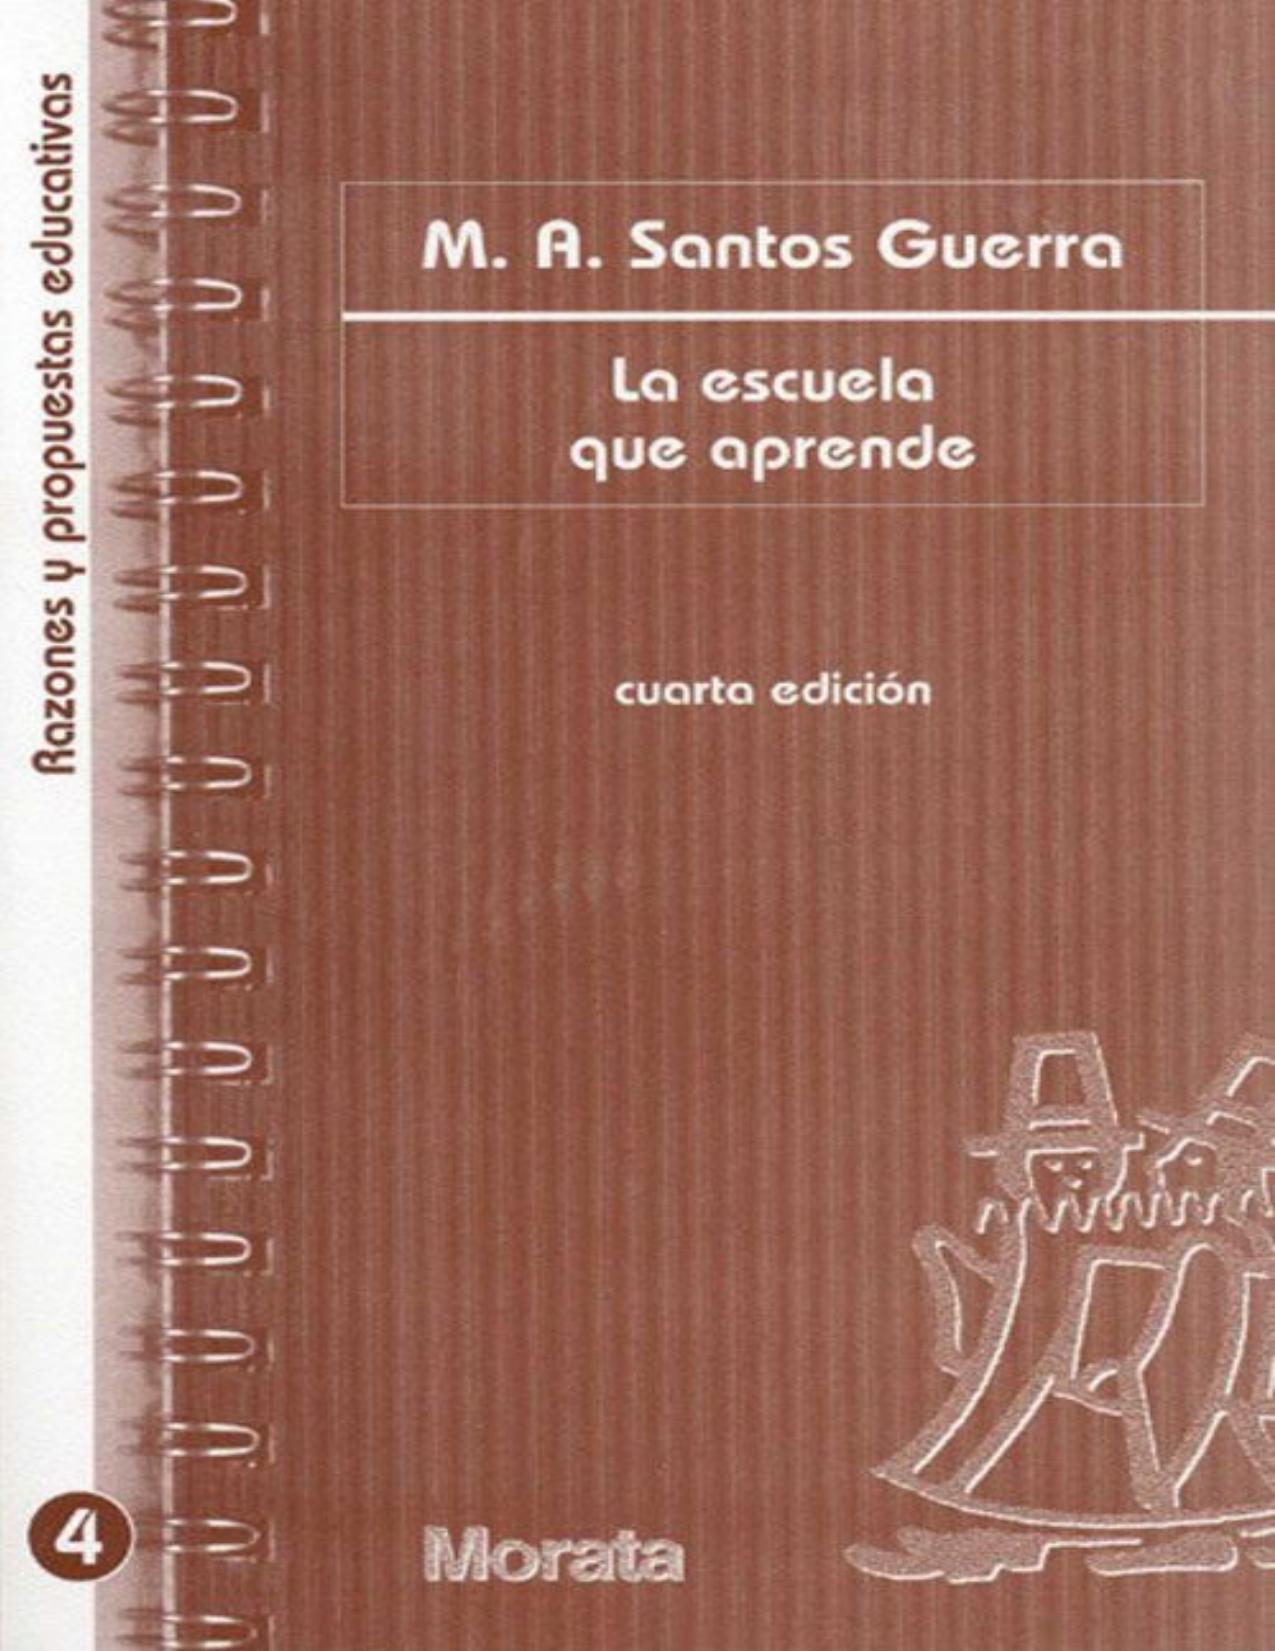 La escuela que aprende (Spanish Edition)